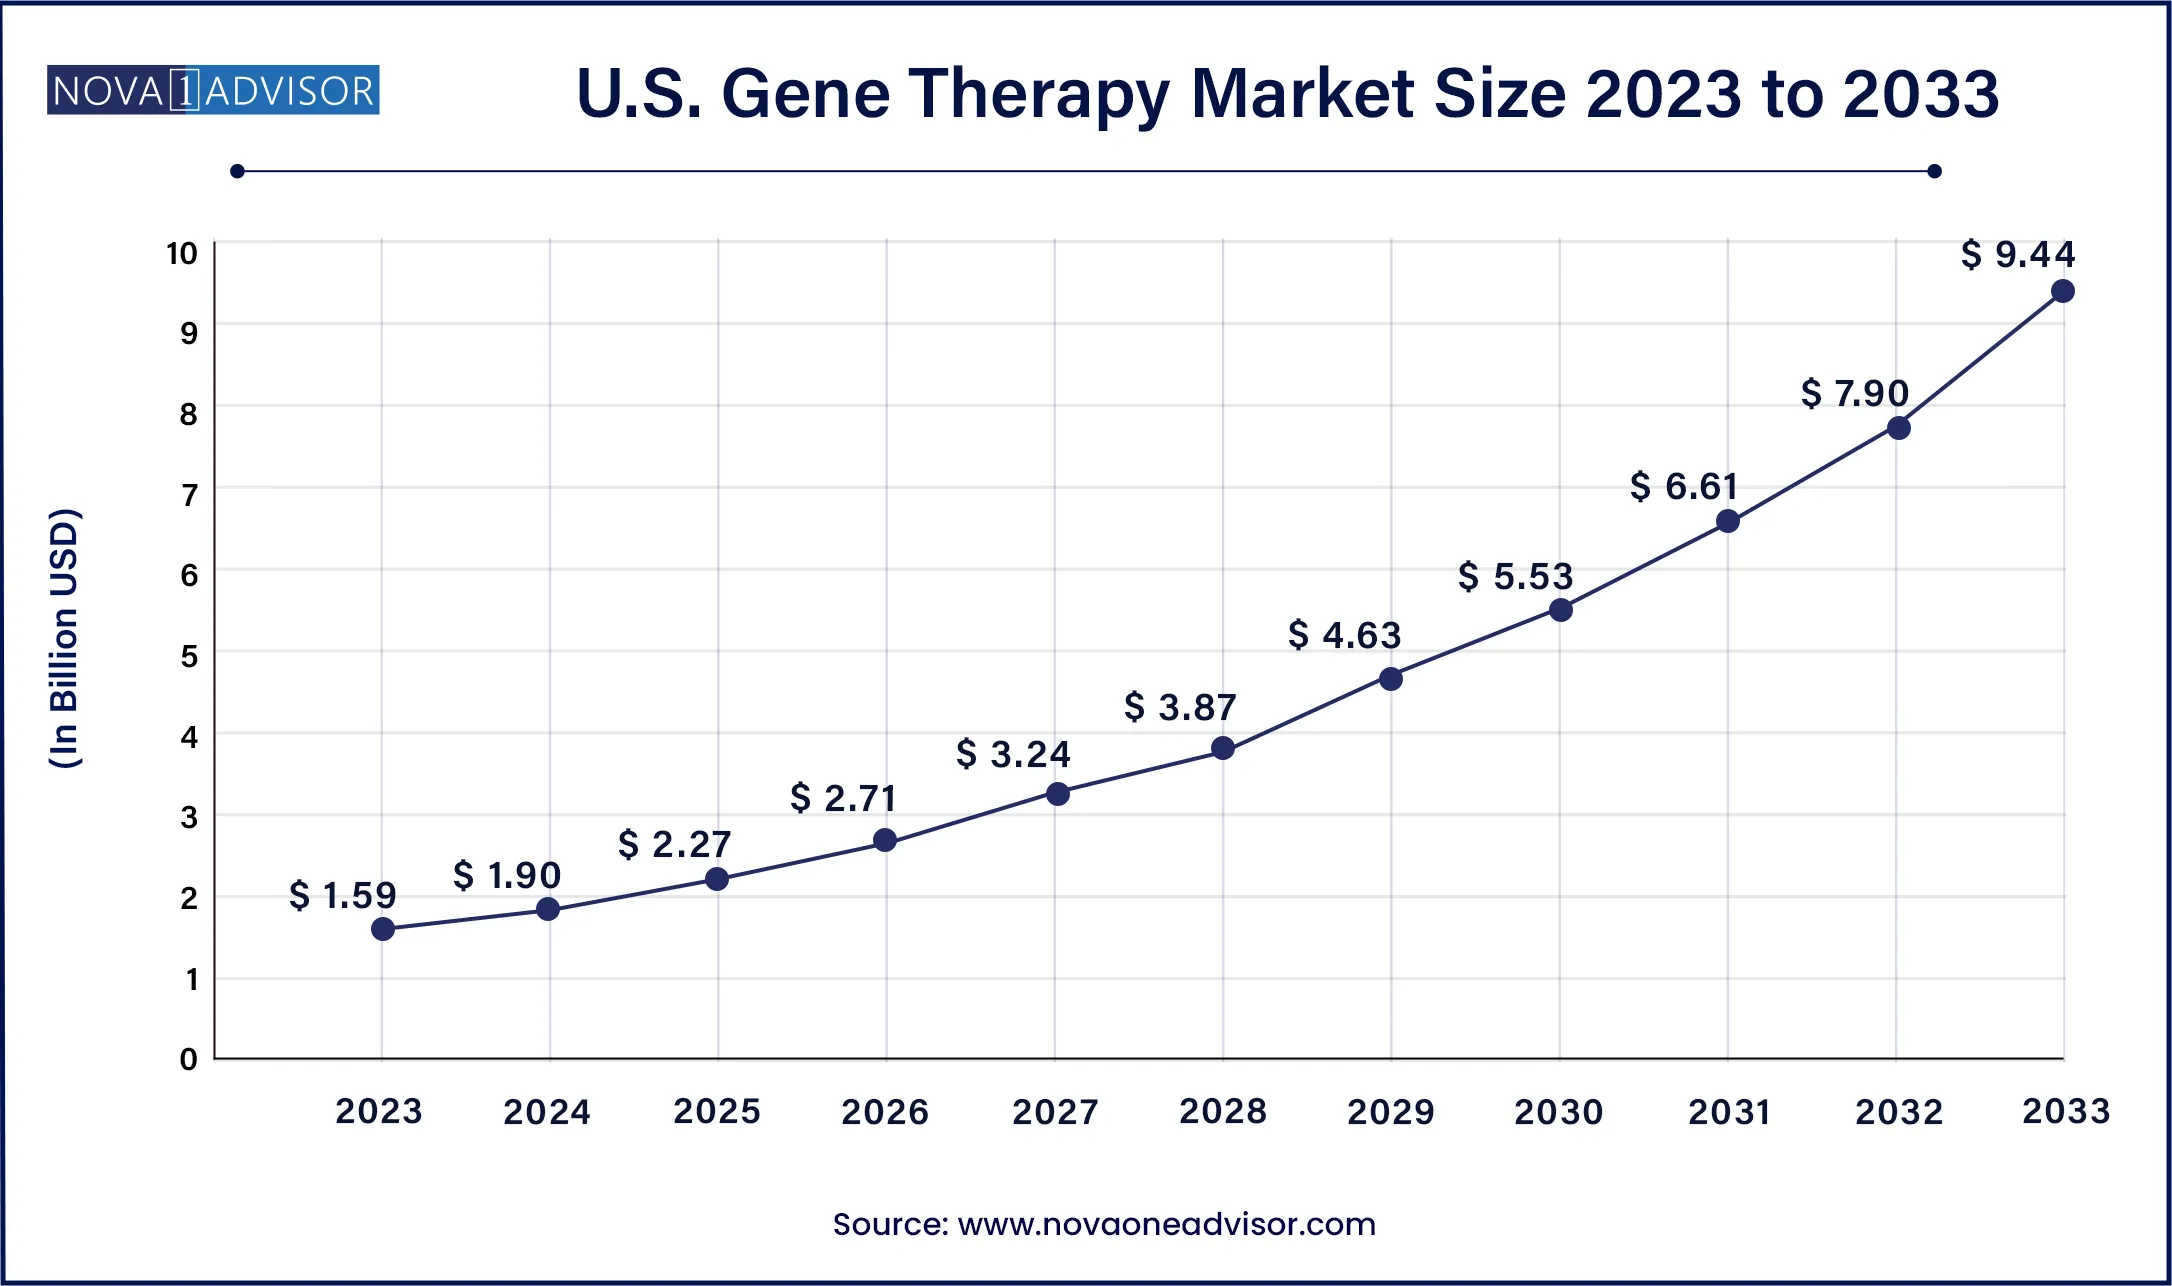 U.S. Gene Therapy Market Size, 2024 to 2033